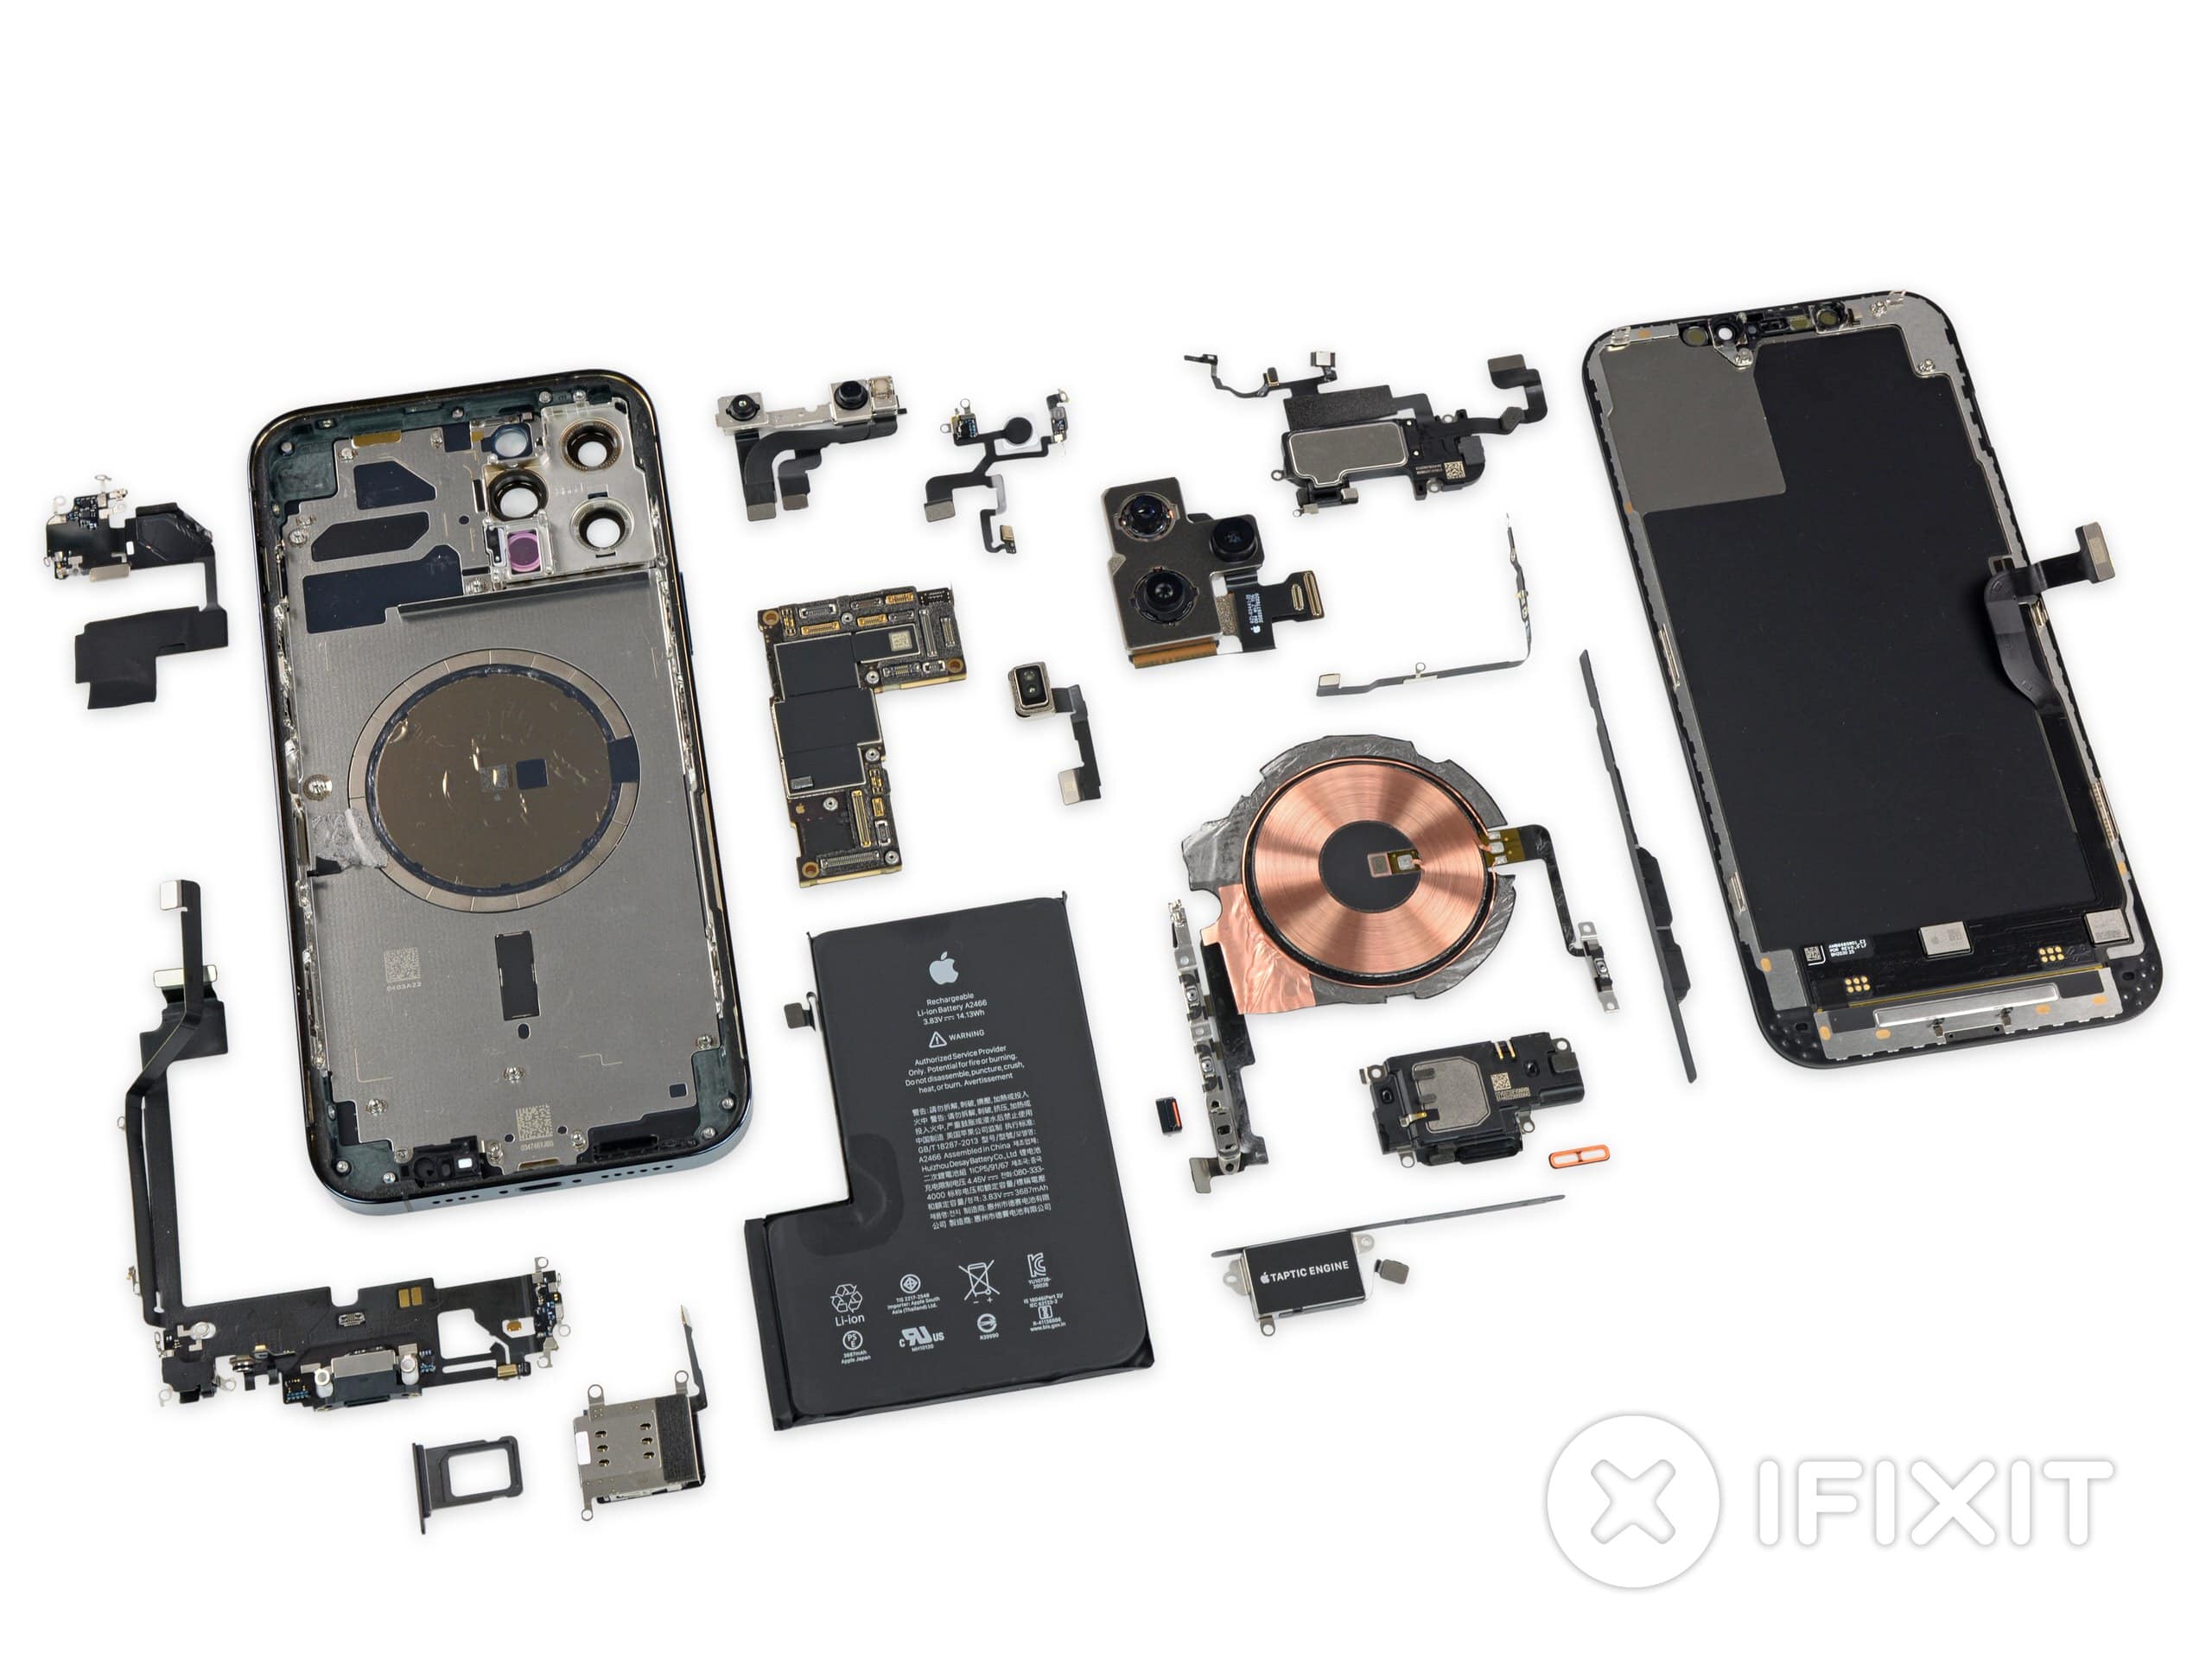 Apple sẽ bán lẻ các thành phần iPhone trong gói dịch vụ tự sửa chữa để bạn tự sửa tại nhà